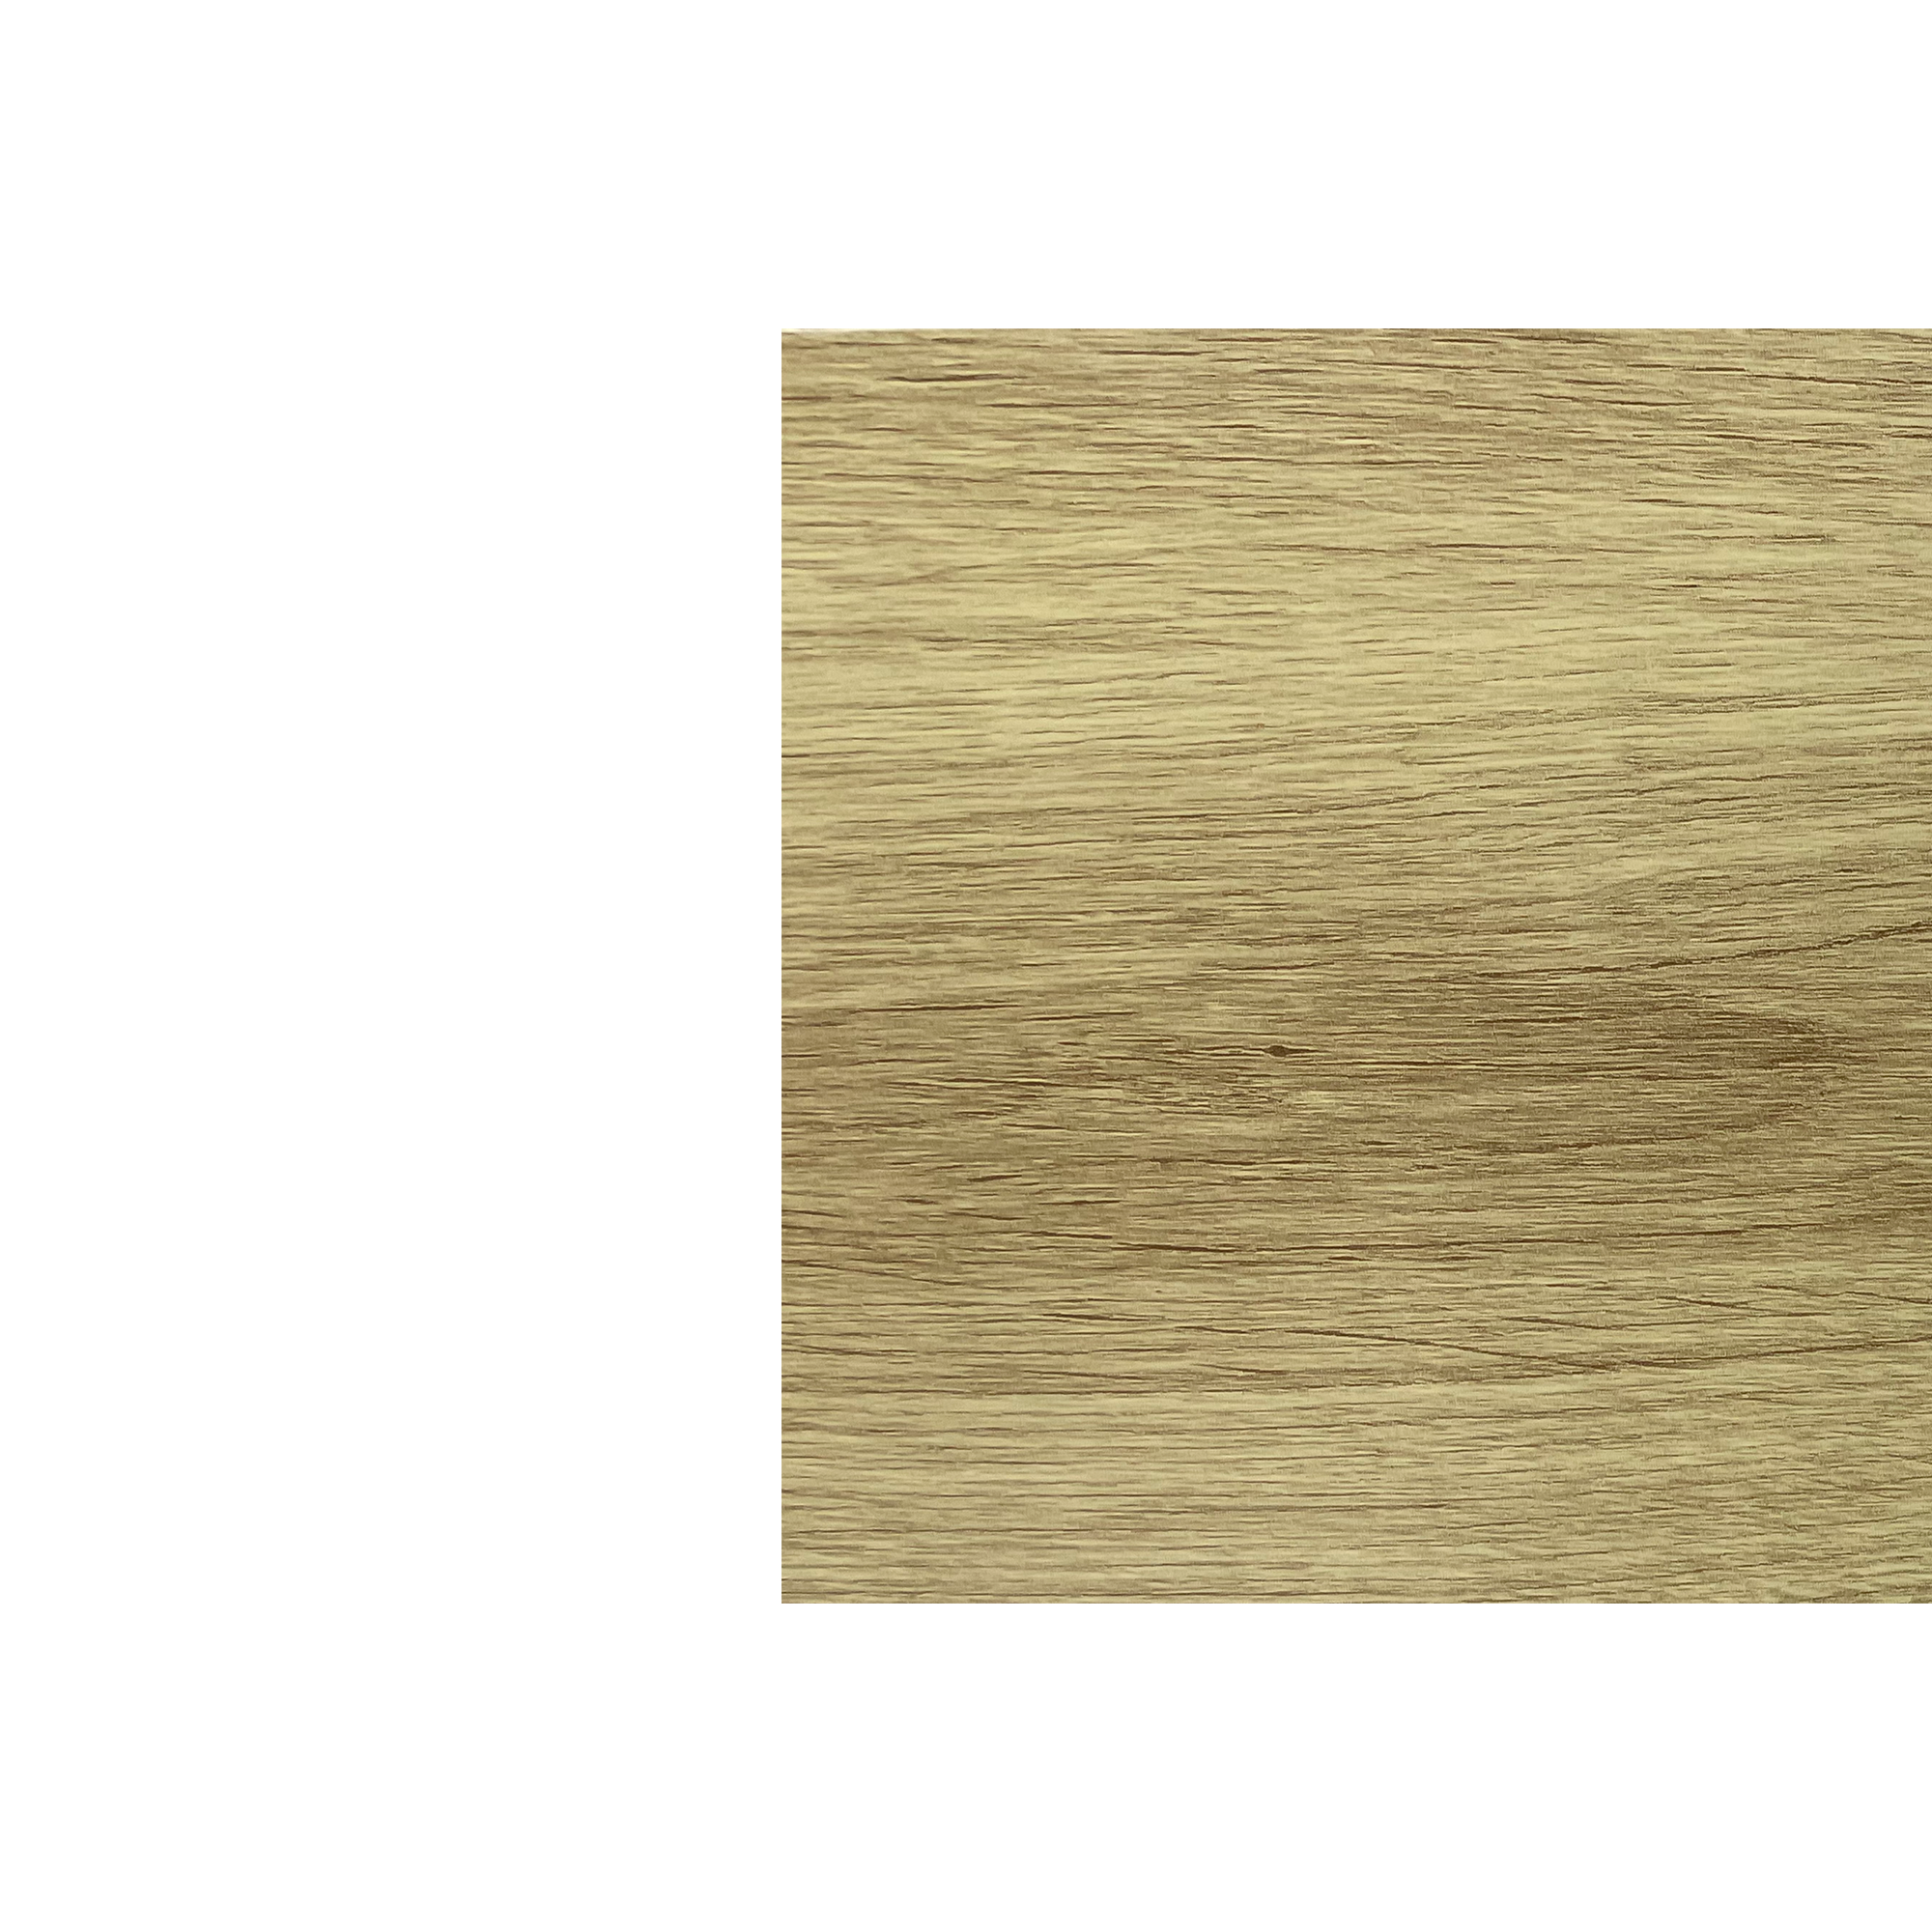 Планка угла внутреннего сложного Экобрус Золотая текила 0,45 мм Printech Доборные элементы для сайдинга Кровля Сервис